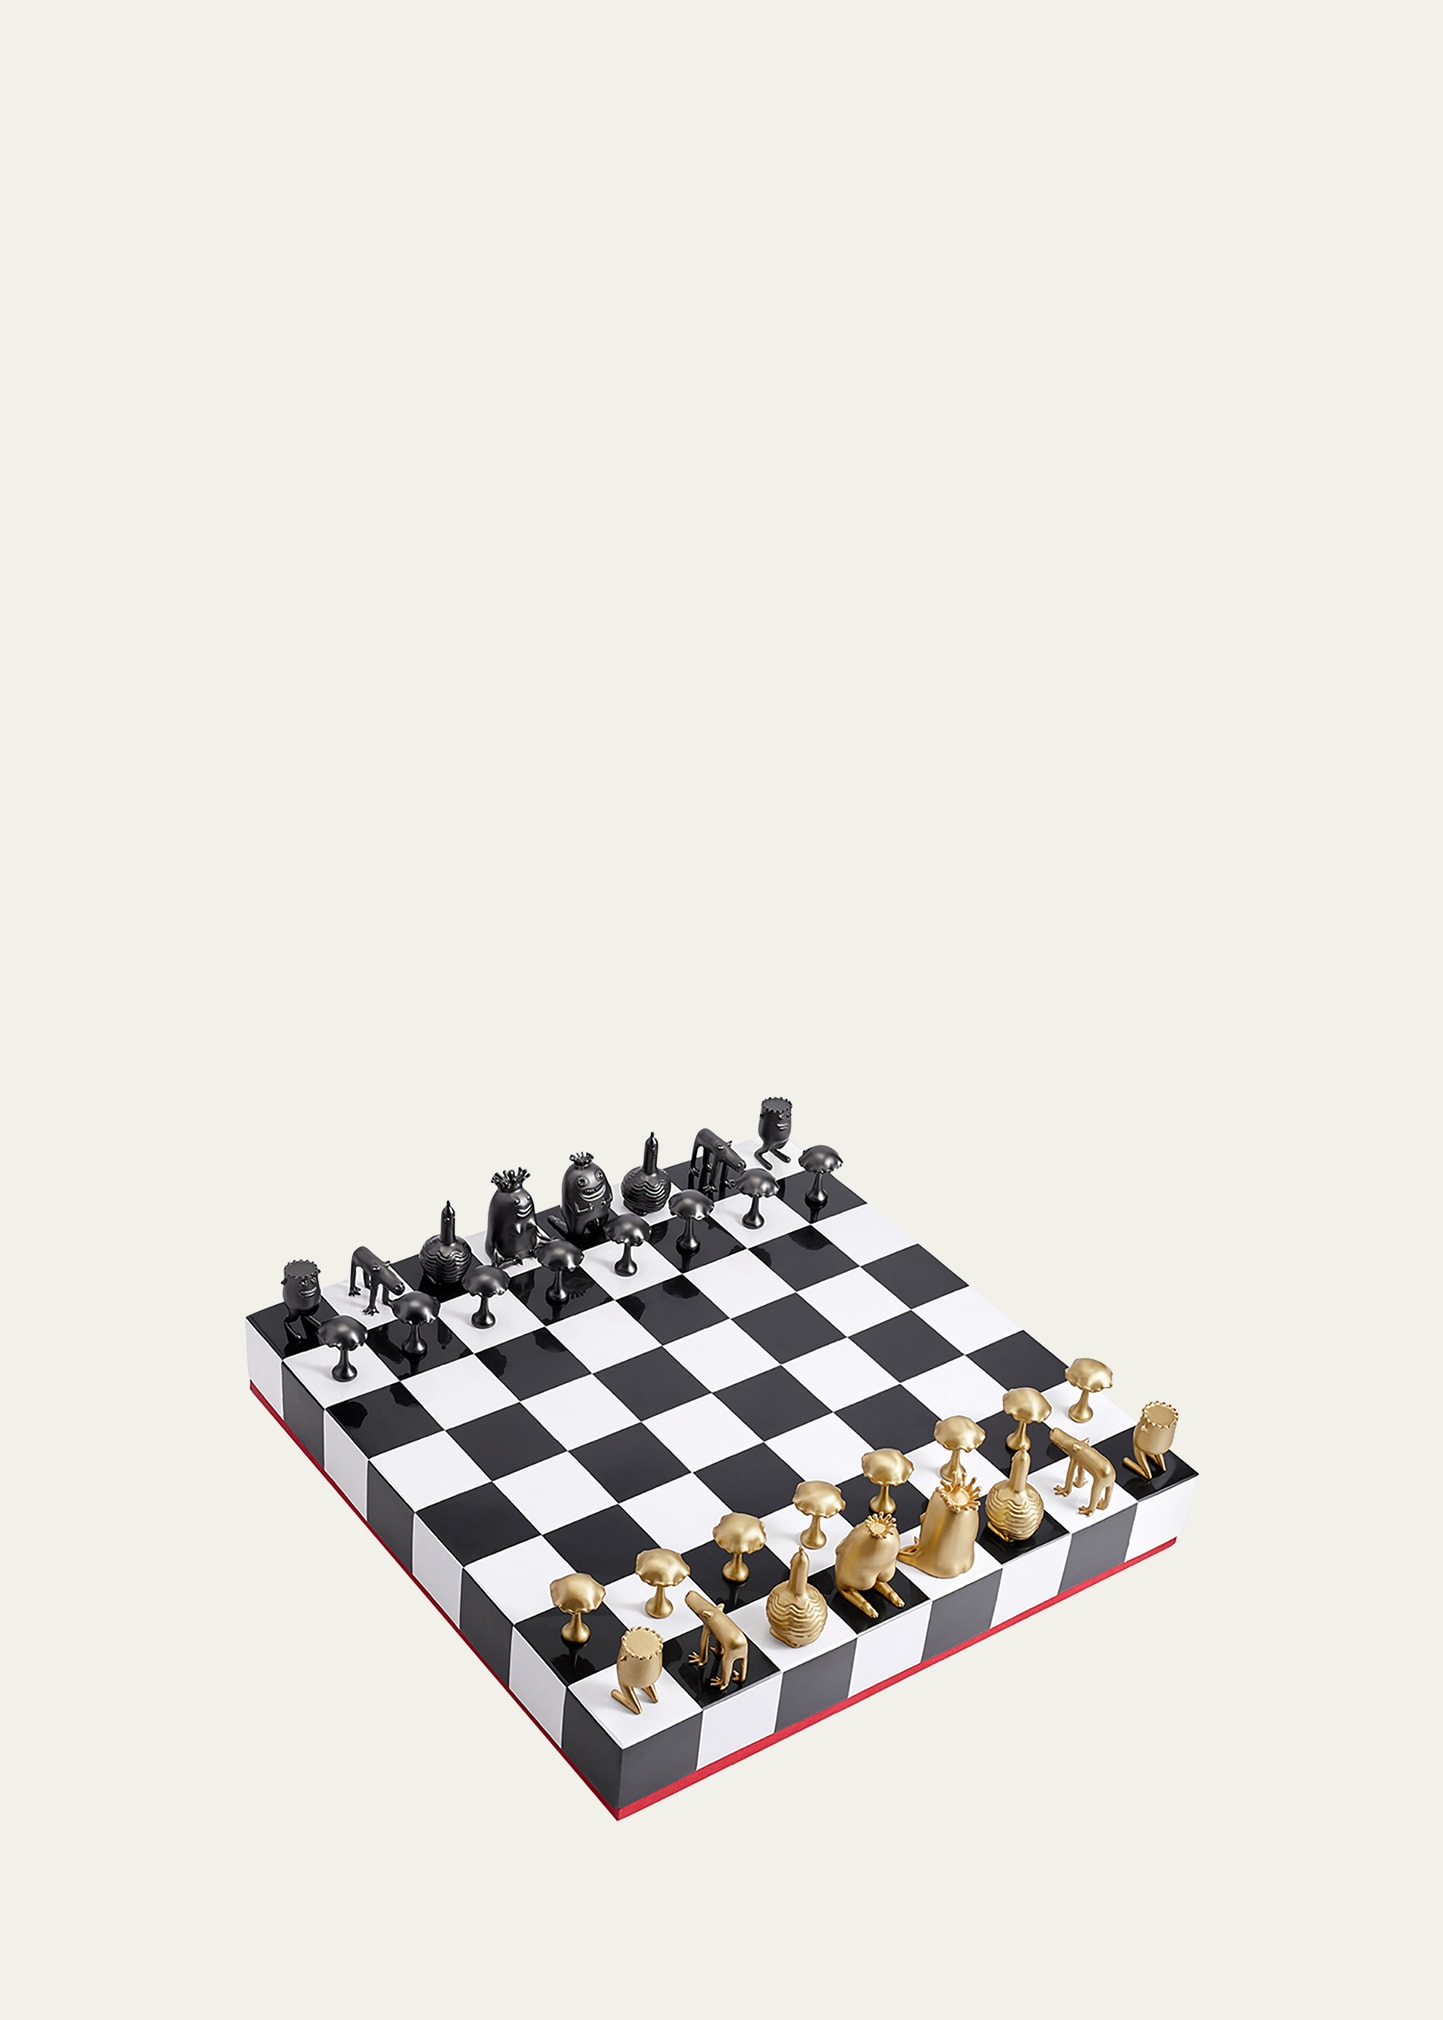 Haas Schach Set von L'Objet – schnell und einfach online bestellen.